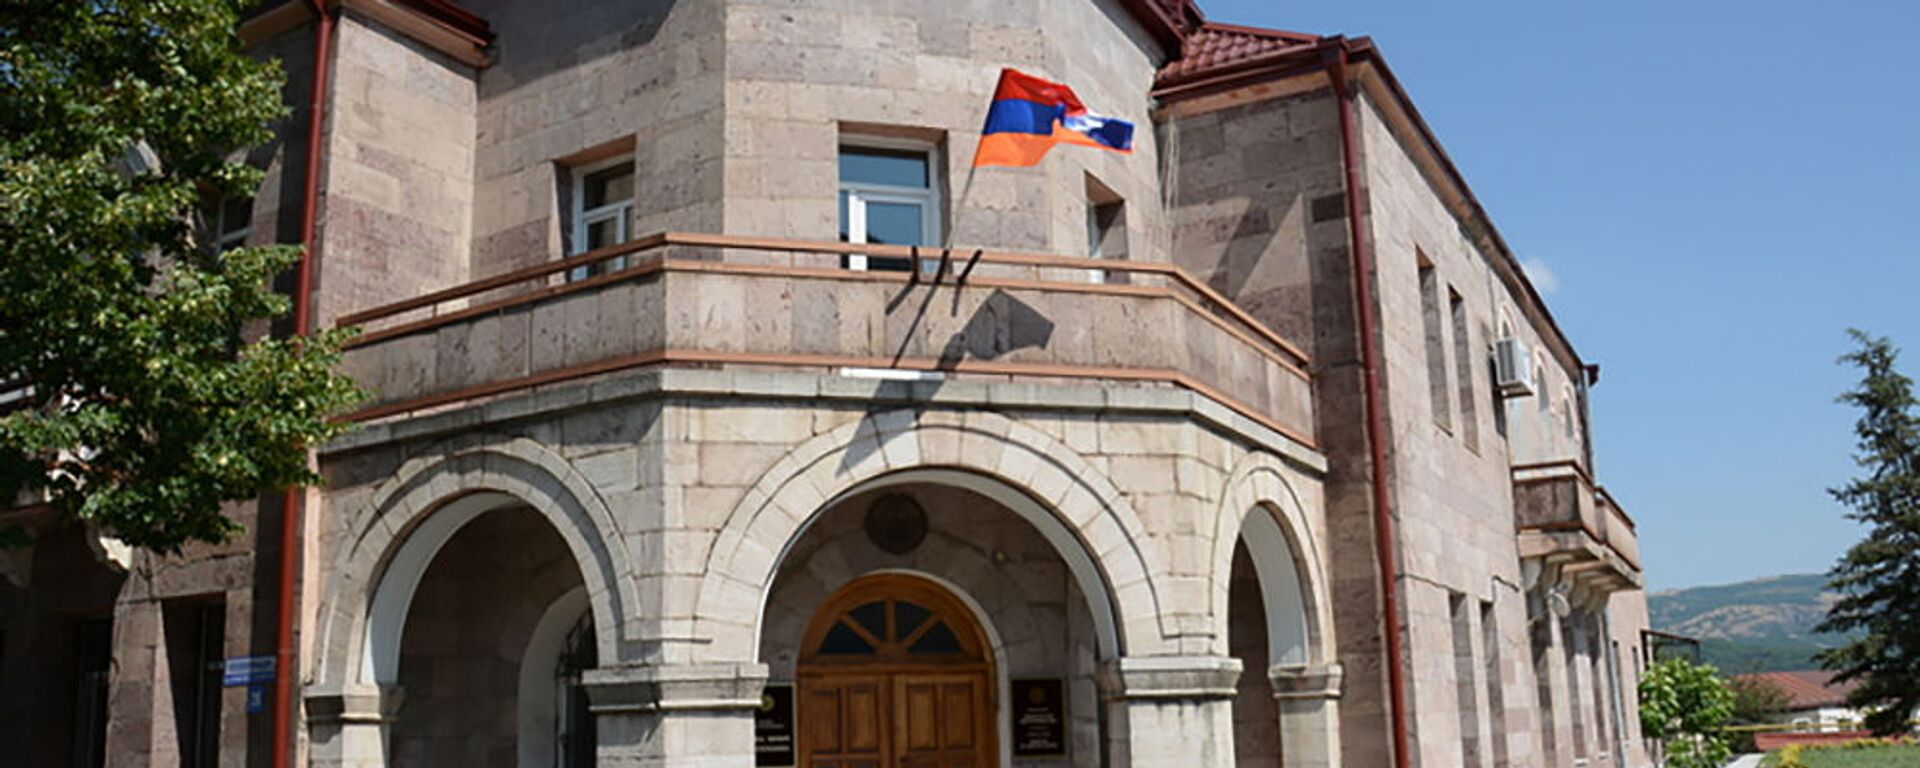 Здание Министерства иностранных дел Карабаха - Sputnik Արմենիա, 1920, 30.04.2021